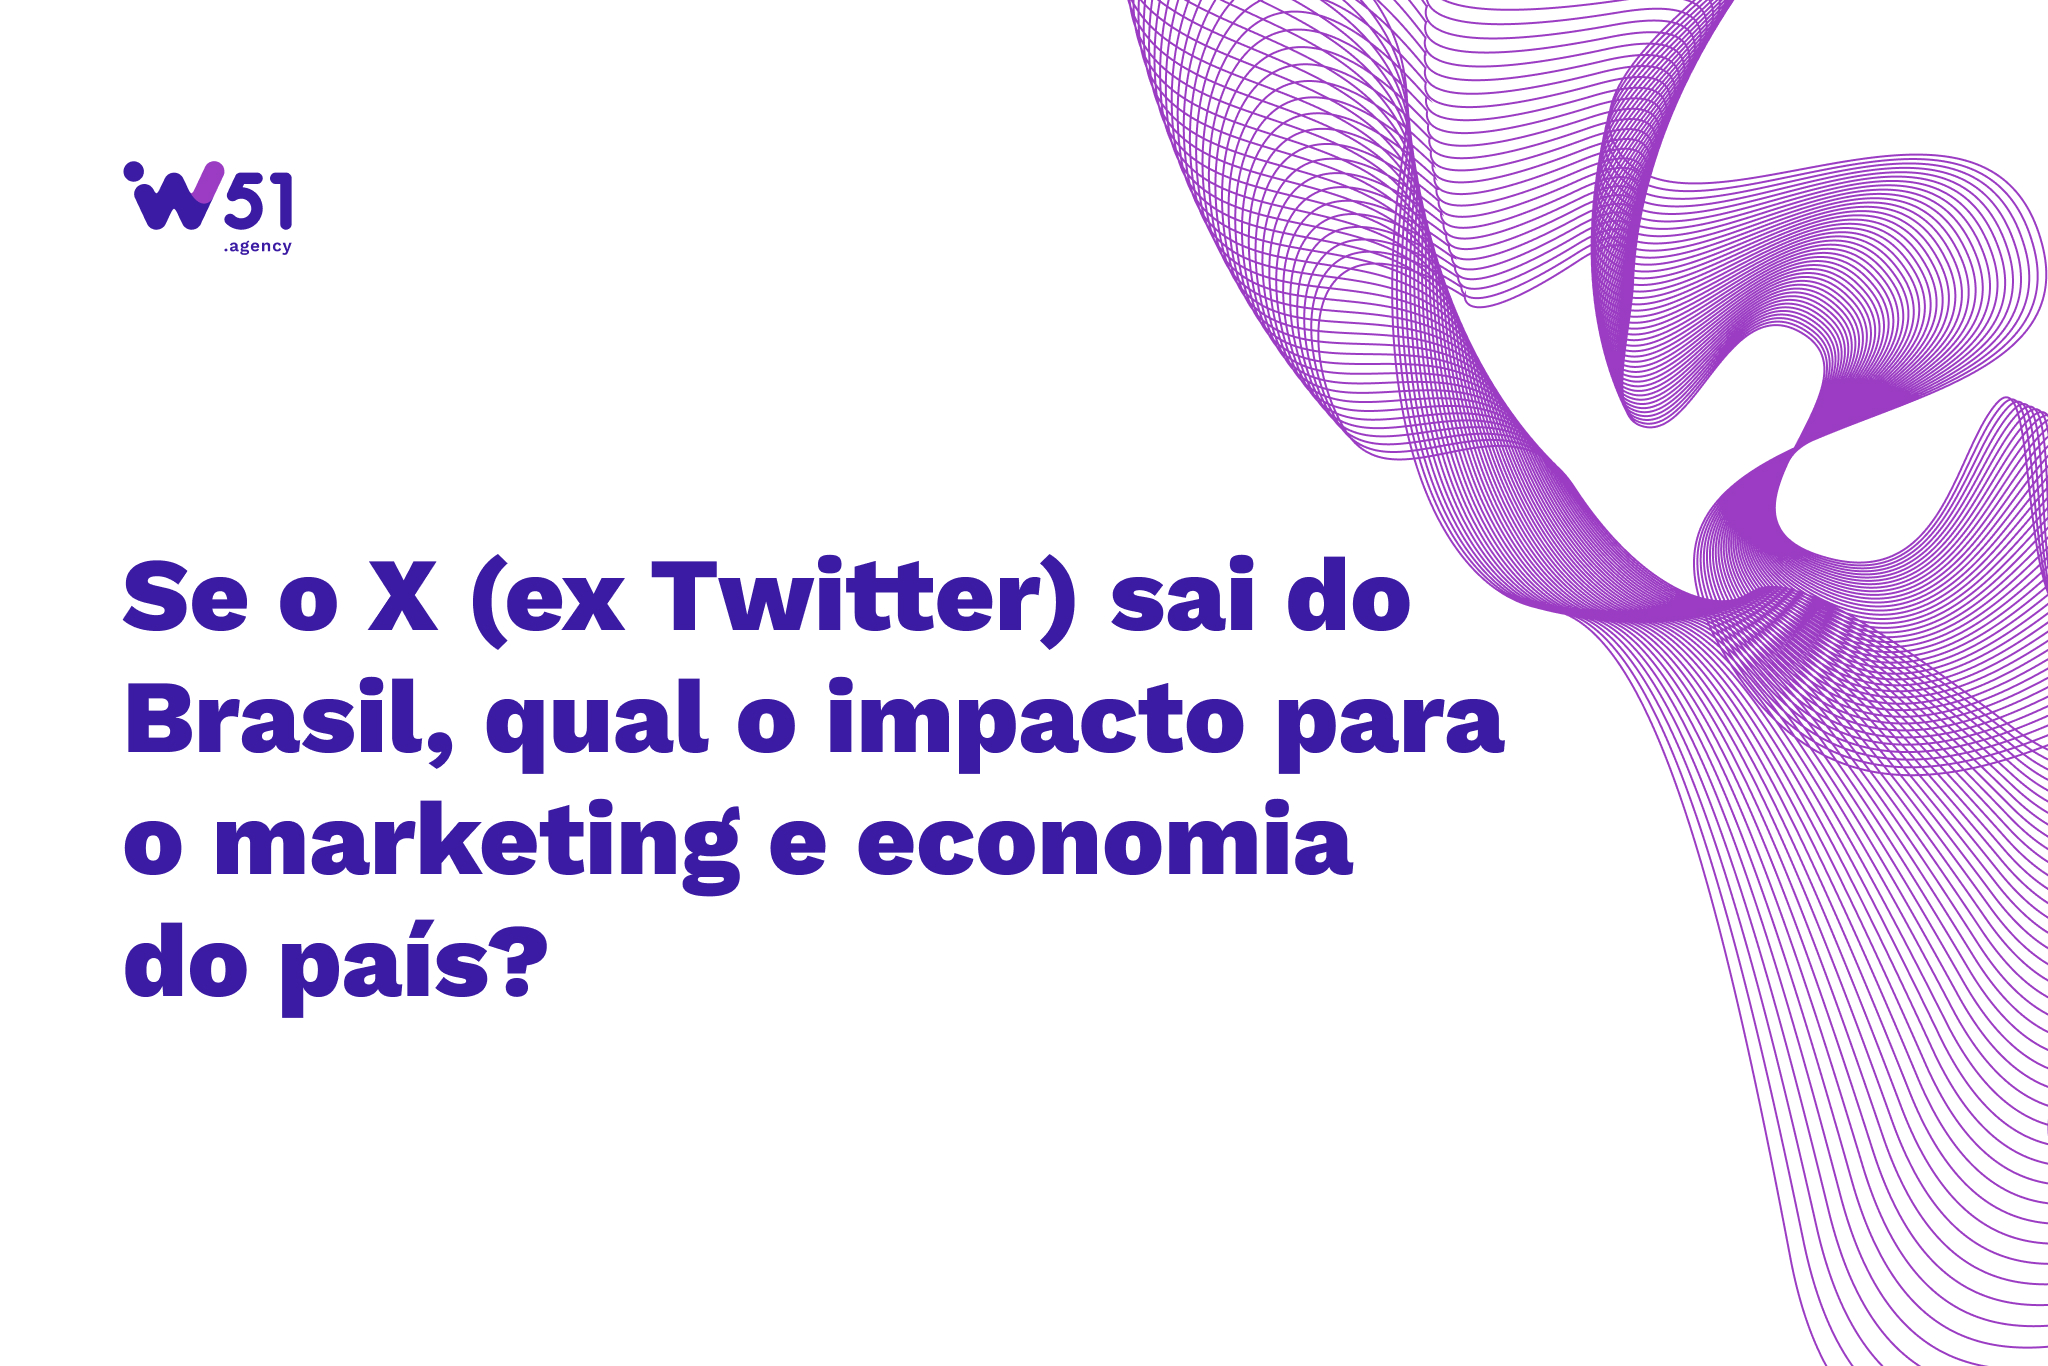 Se o X sair do Brasil, qual o impacto para o marketing e economia?